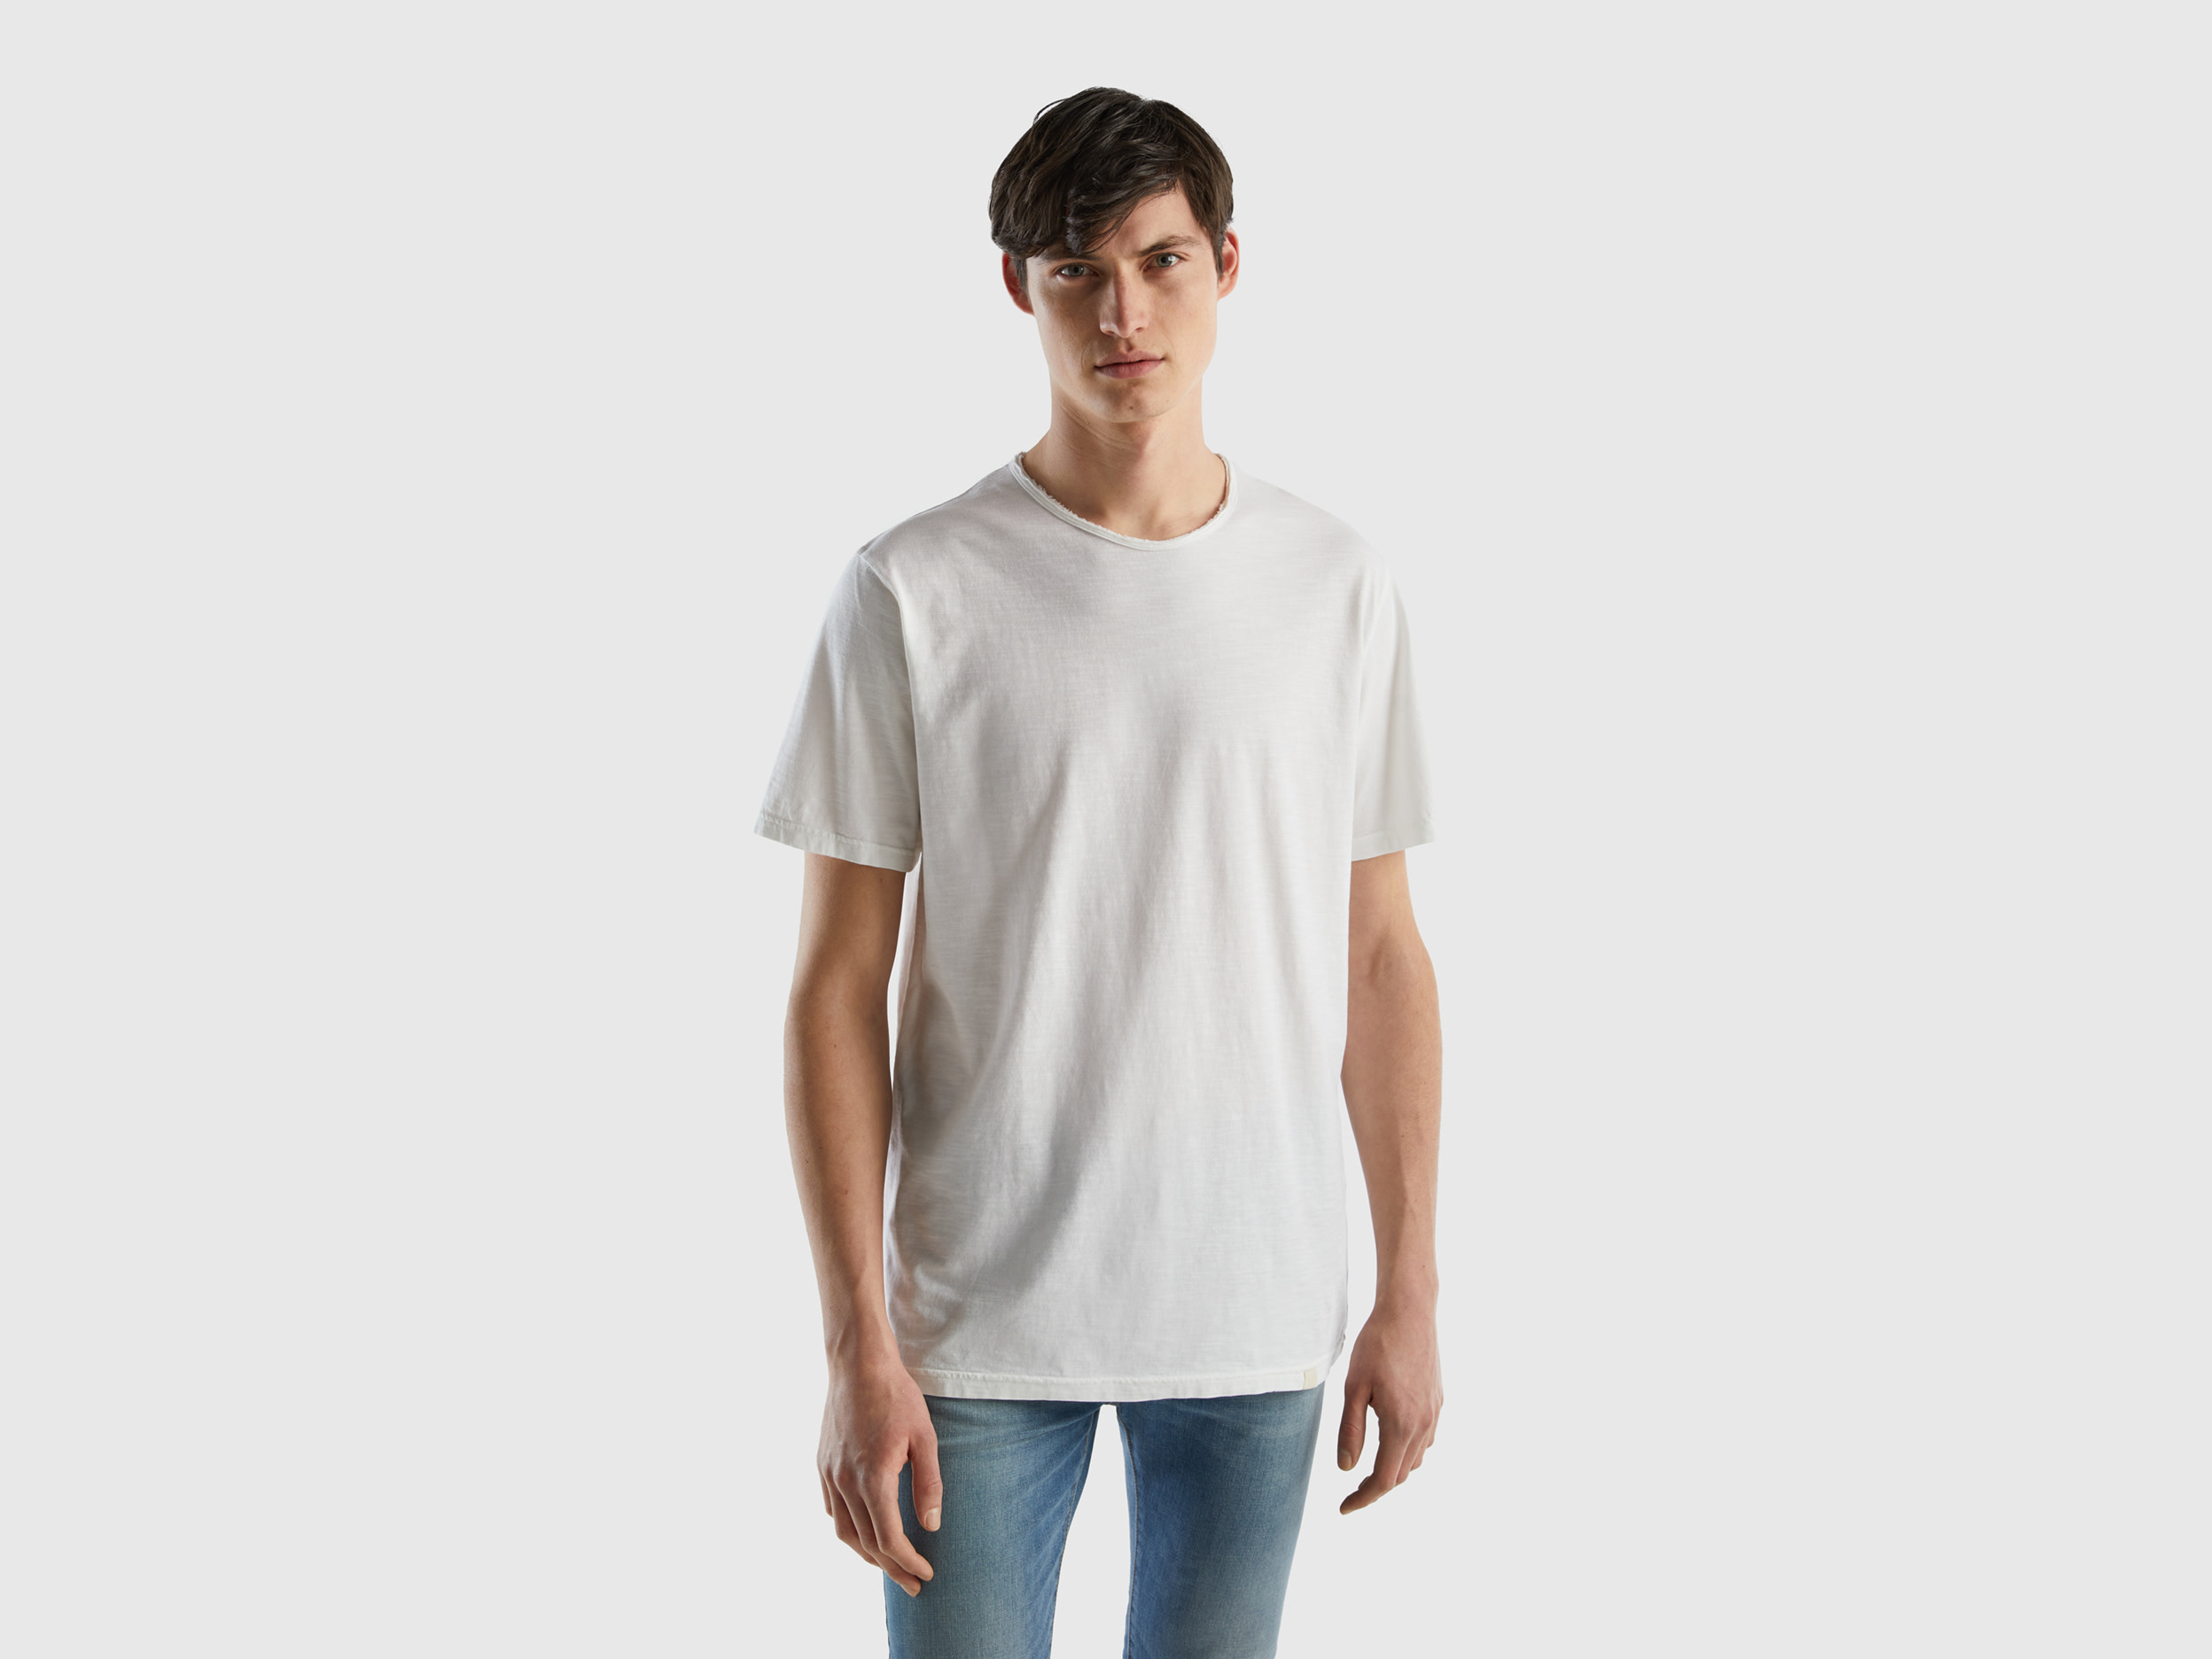 Benetton, White T-shirt In Slub Cotton, size XXXL, White, Men